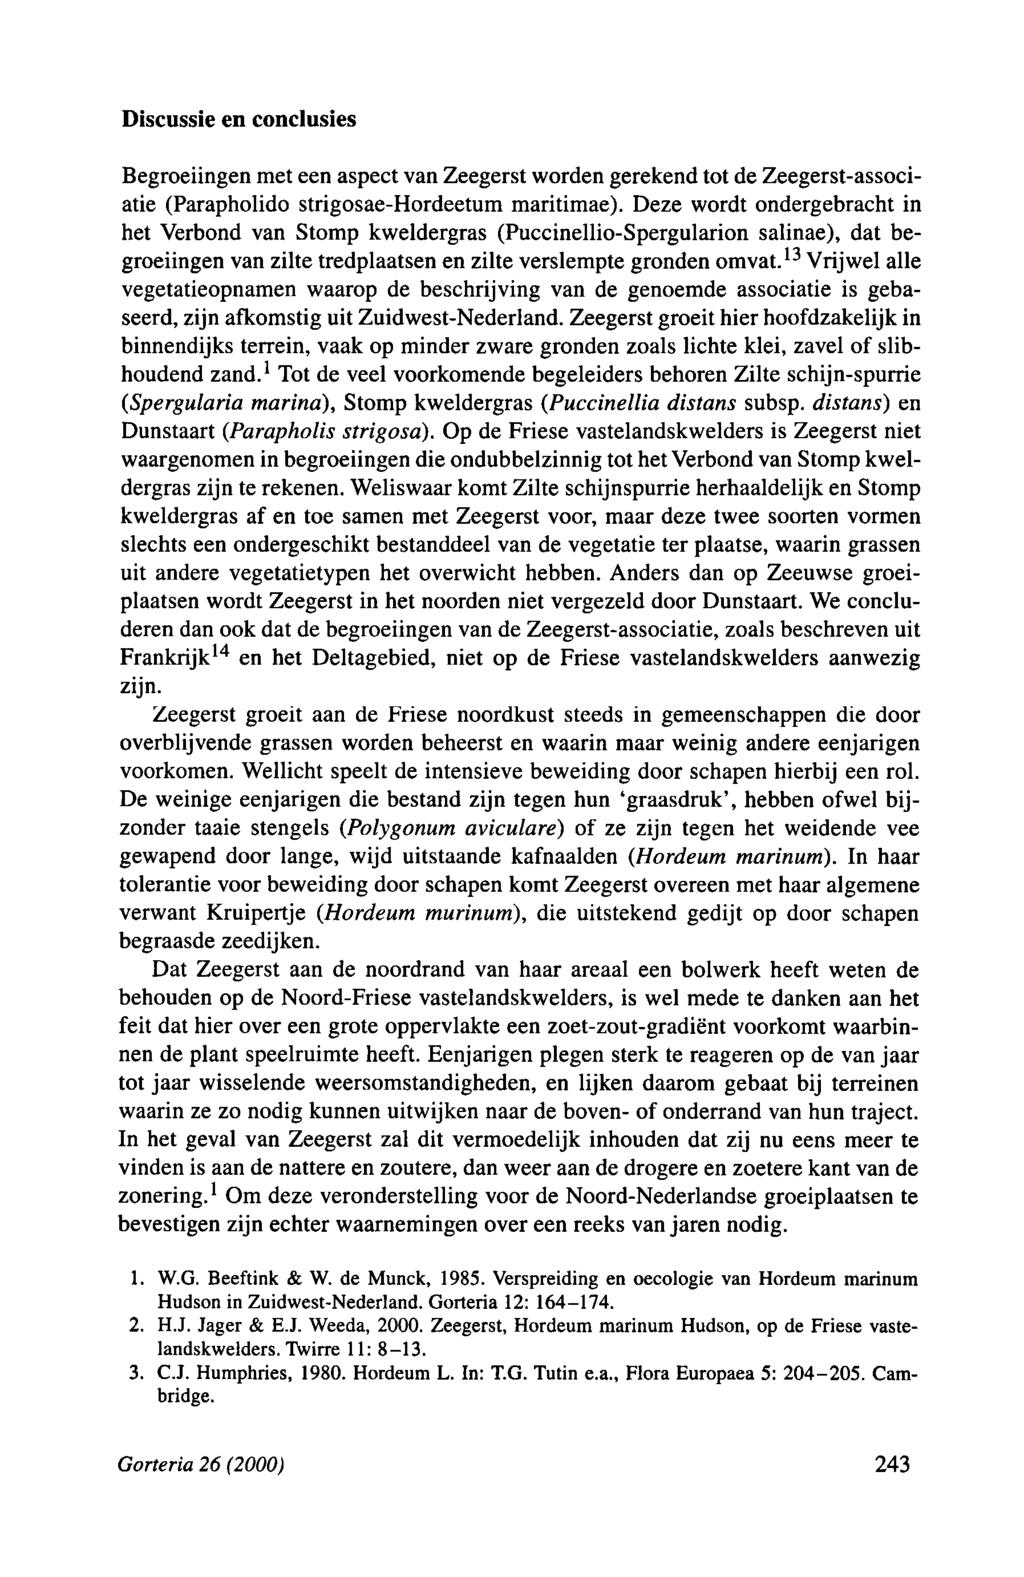 Discussie en conclusies Begroeiingen met een aspect van Zeegerst worden gerekend tot de Zeegerst-associatie (Parapholido strigosae-hordeetum maritimae).